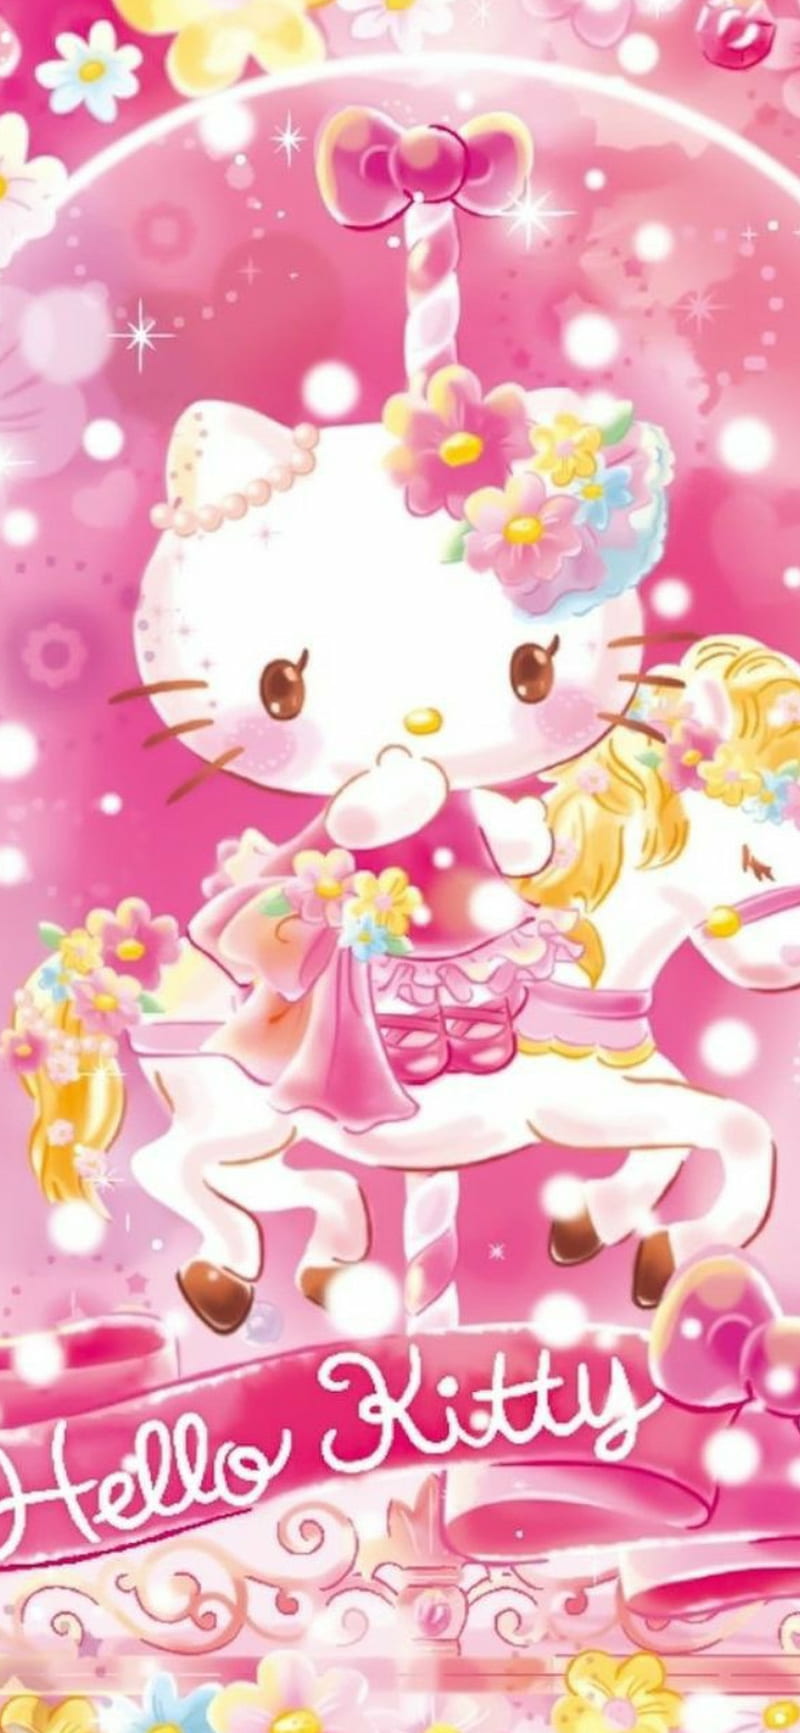 HELLO KITTY  Hello kitty backgrounds, Pink hello kitty, Hello kitty  wallpaper